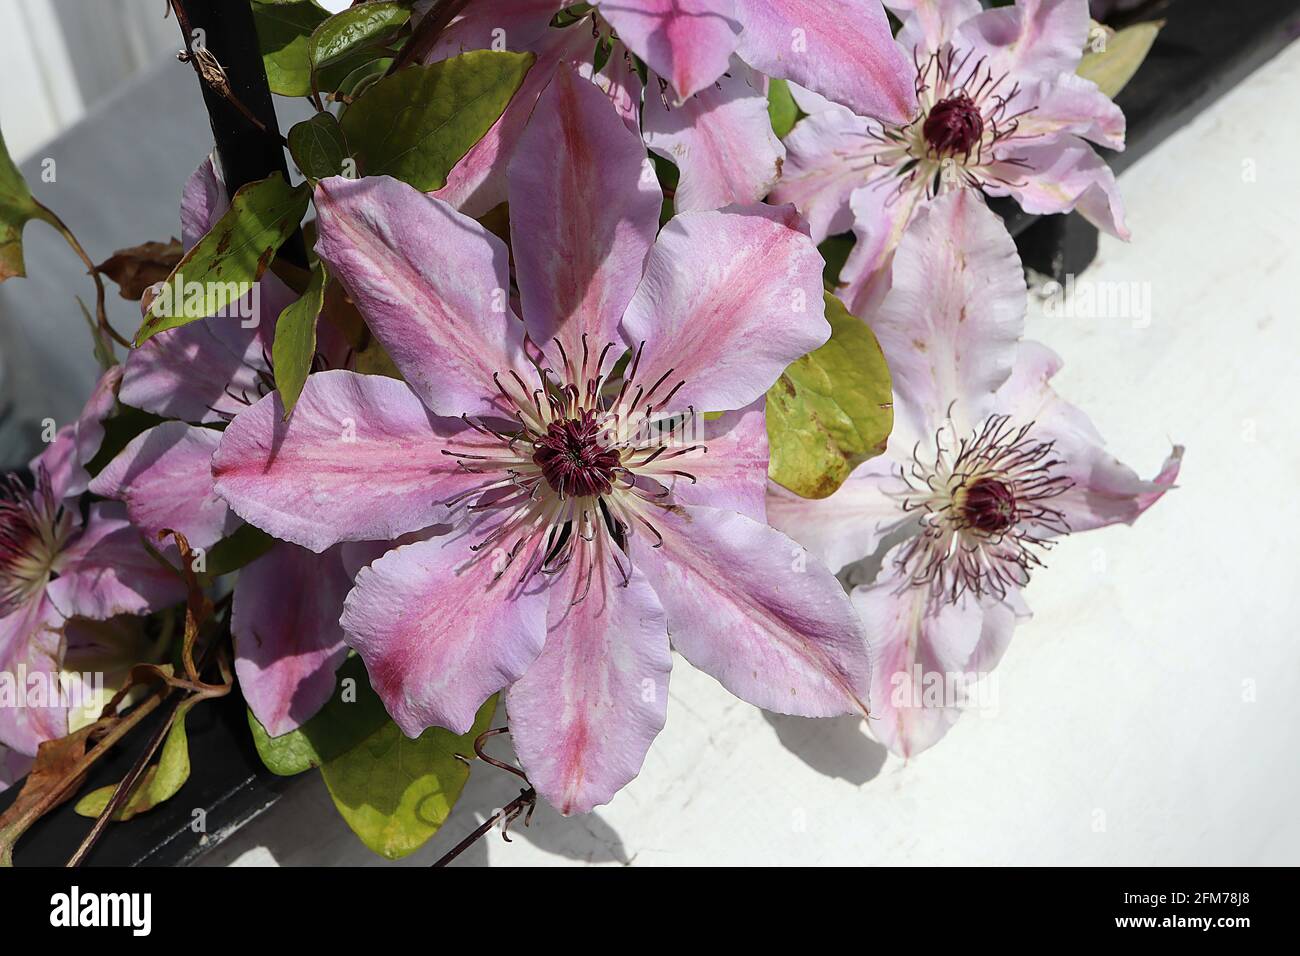 Clematis ‘Ooh la l’ pale fiori rosa con striscia centrale rosa scuro su ogni petalo, maggio, Inghilterra, Regno Unito Foto Stock